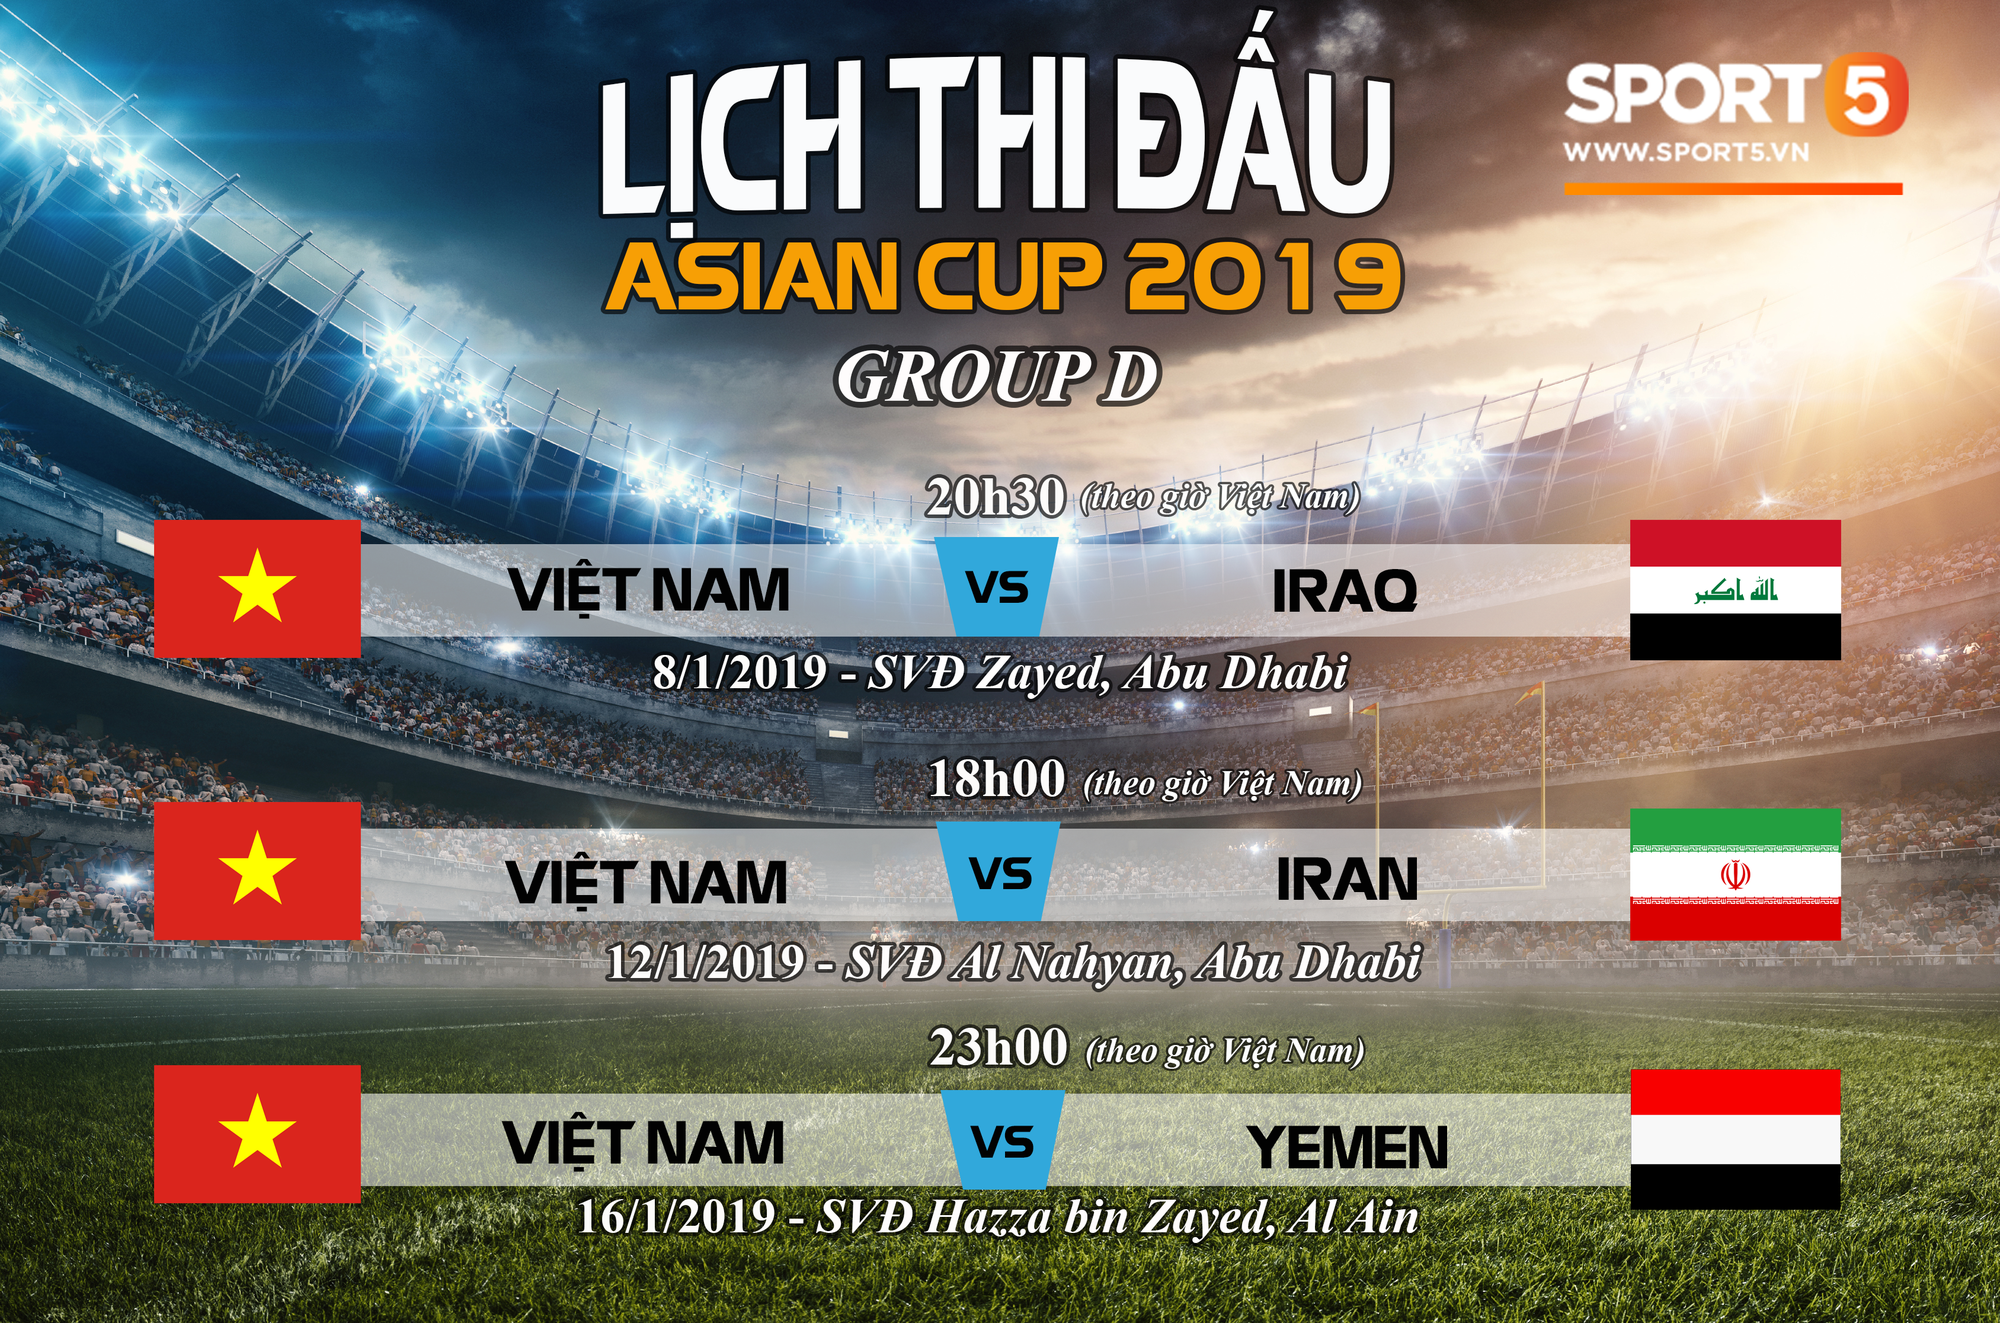 Tuyển Việt Nam được phục vụ tiêu chuẩn 5 sao khi dự Asian Cup 2019 tại UAE - Ảnh 1.